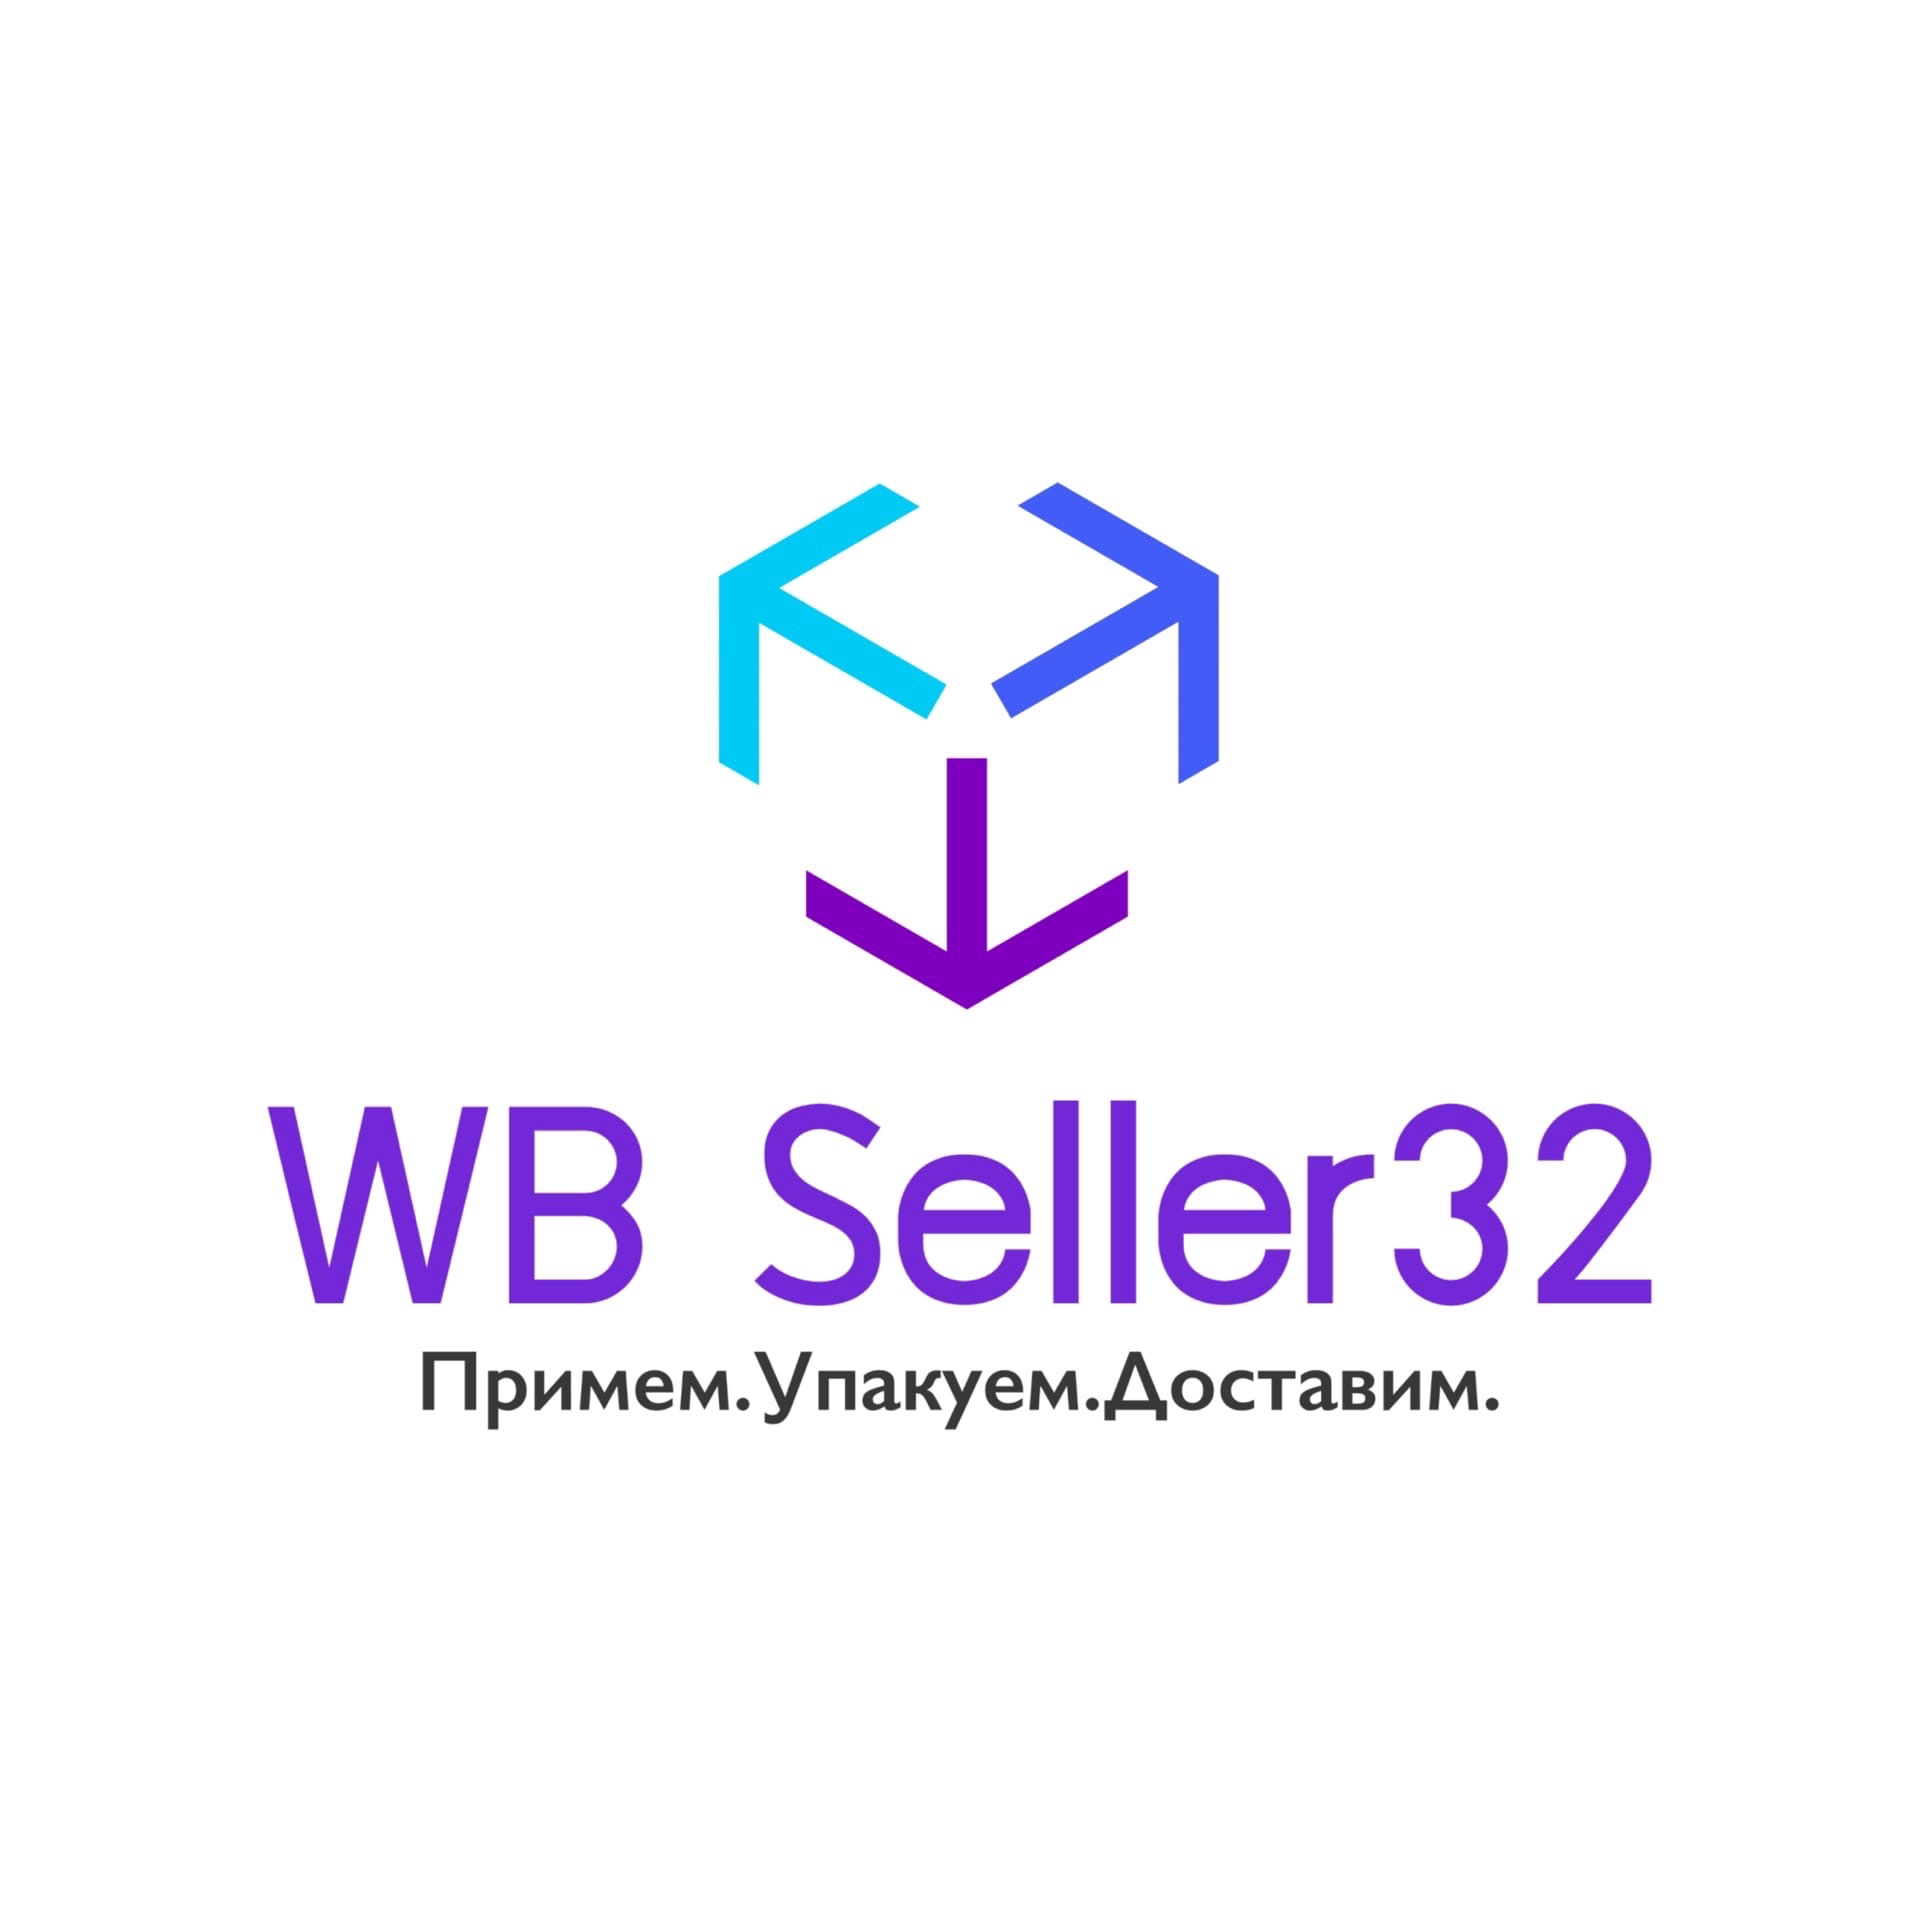 Логотип Wb Seller32